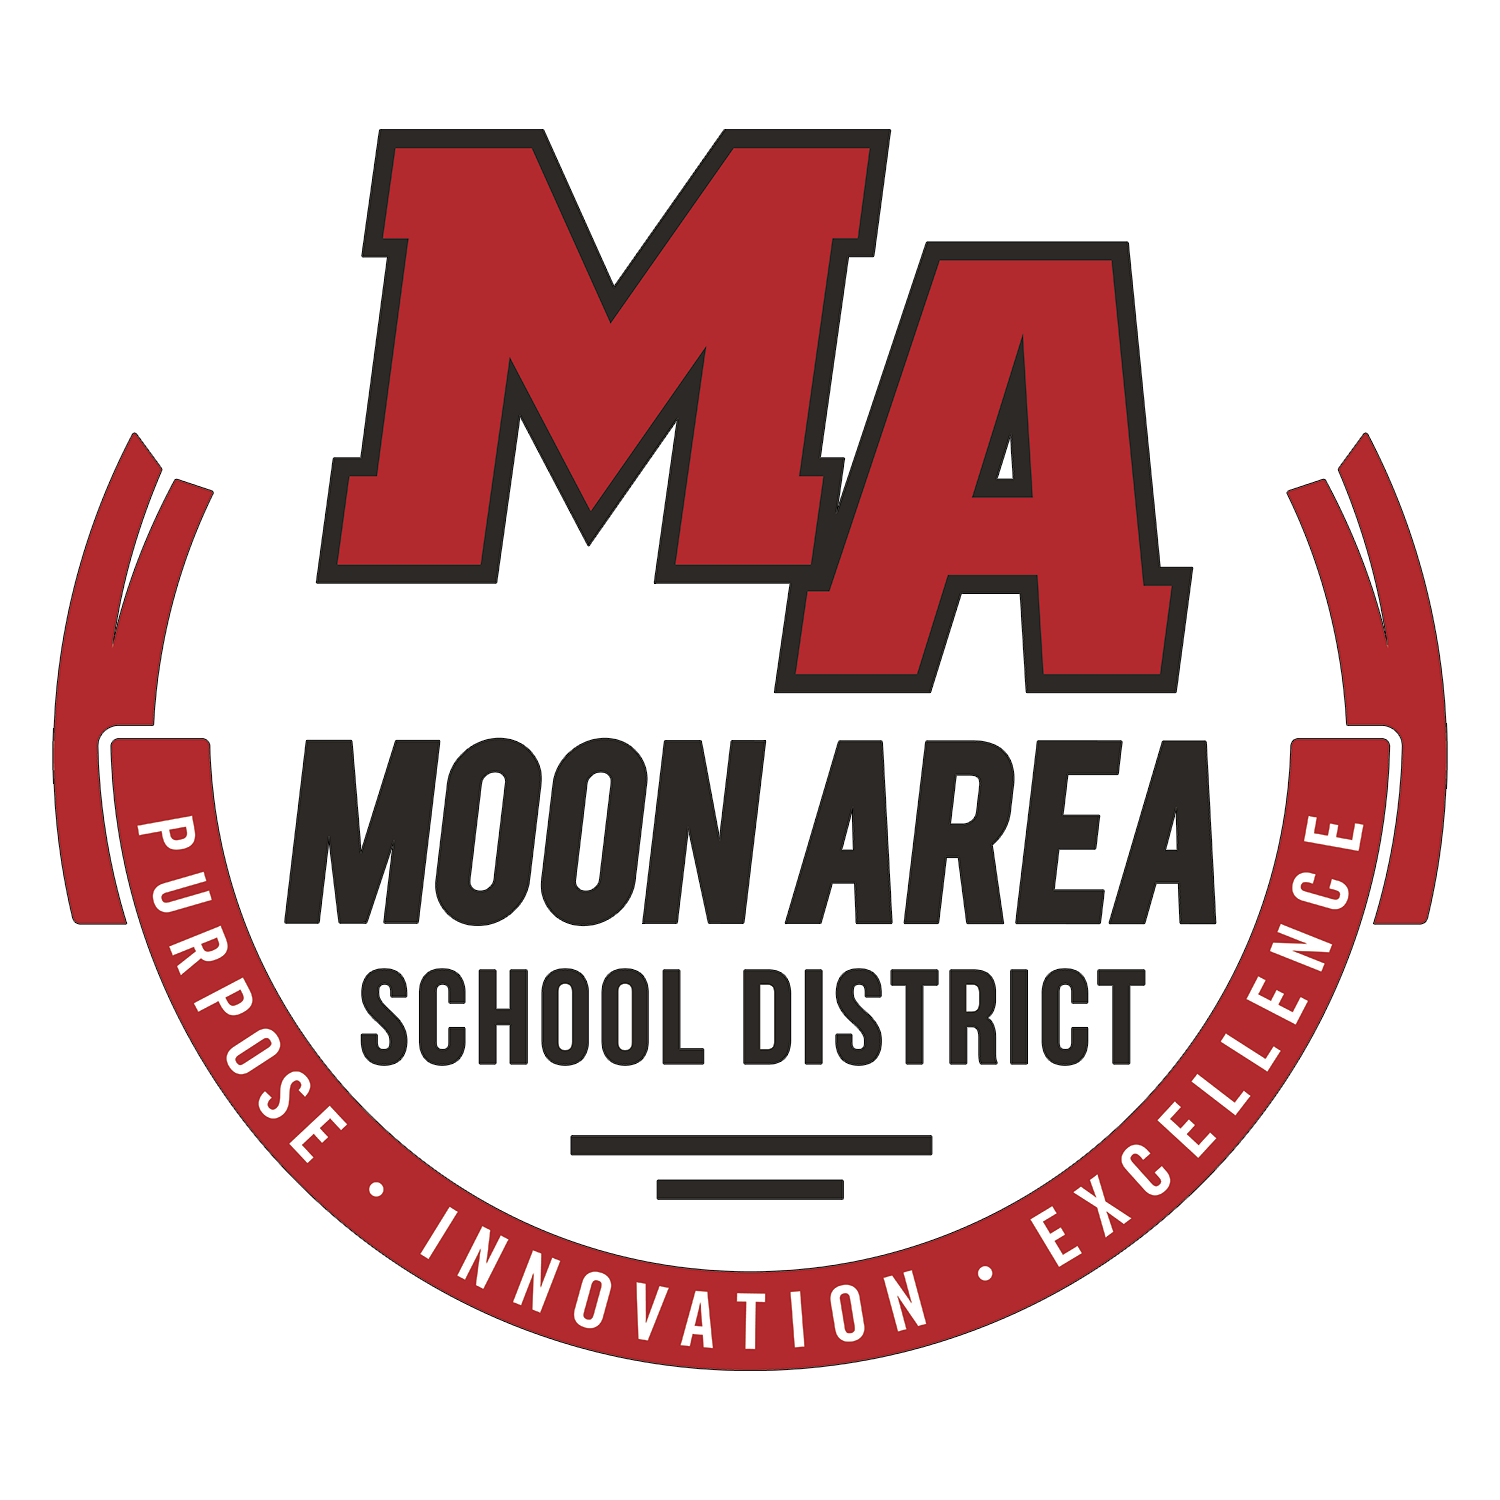 Logotipo do distrito escolar da área da lua